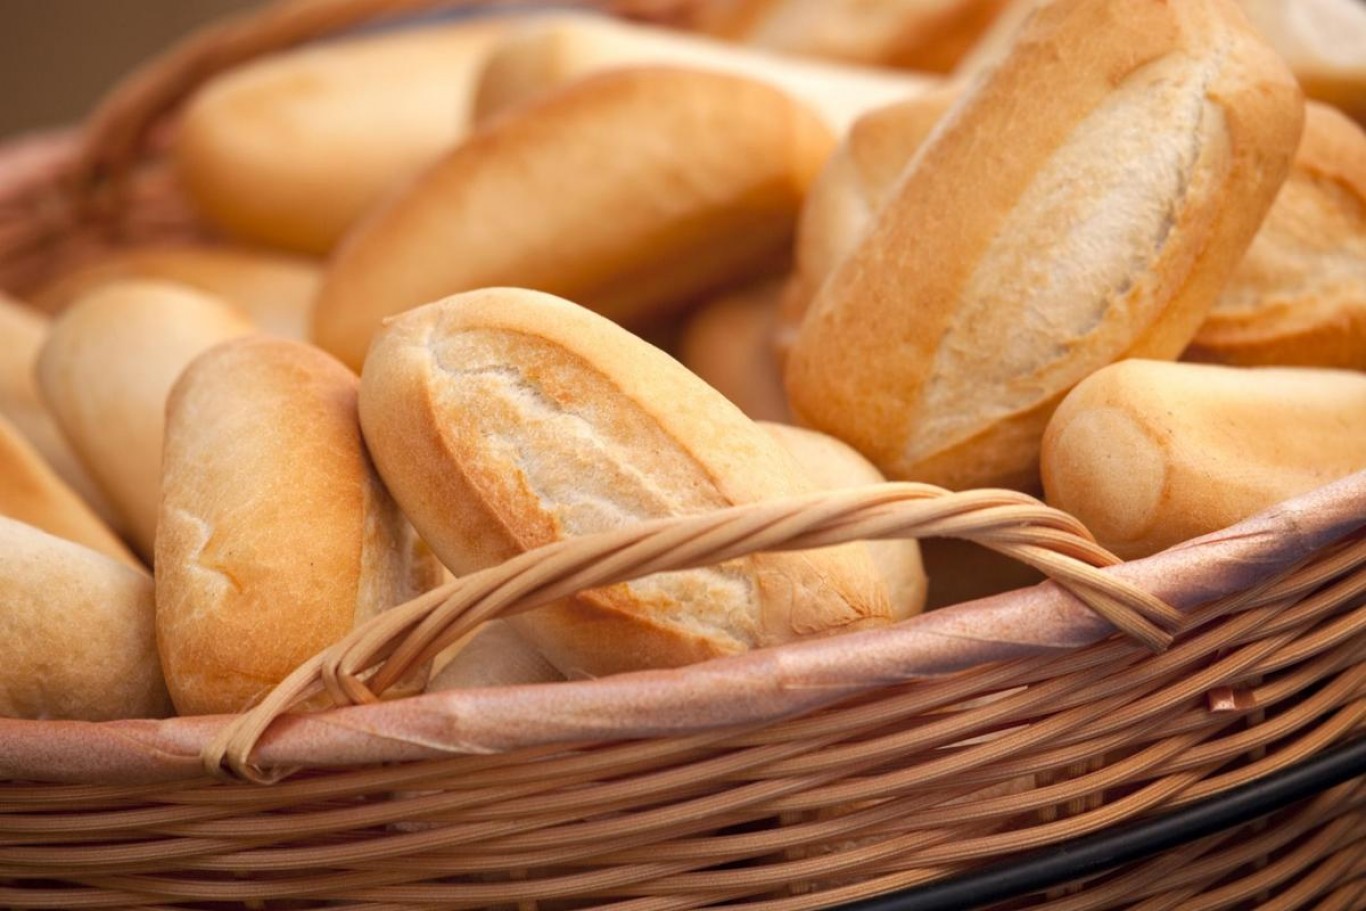 "El pan debería aumentar pero estamos trabajando para que no suceda", Raul Santoandré